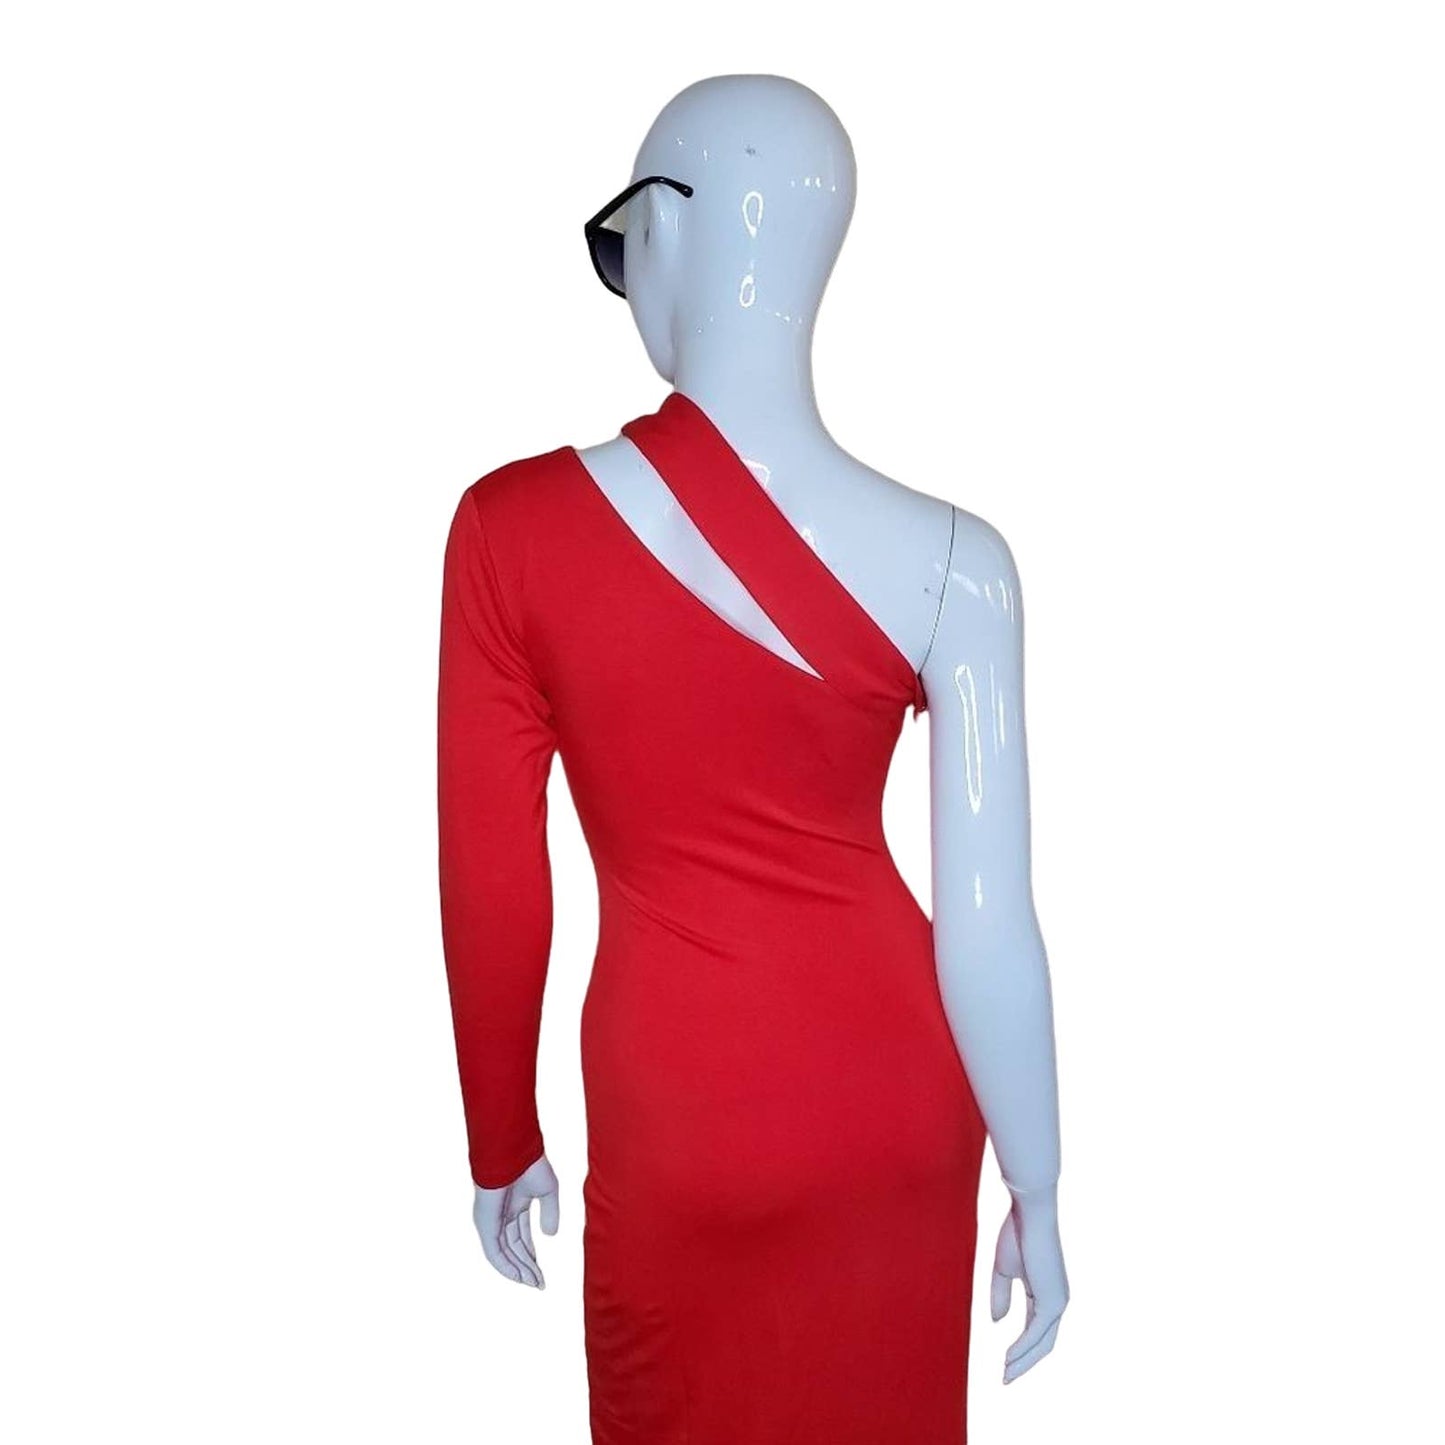 AQ/AQ 1 Sleeve Red Maxi Dress, Size 0